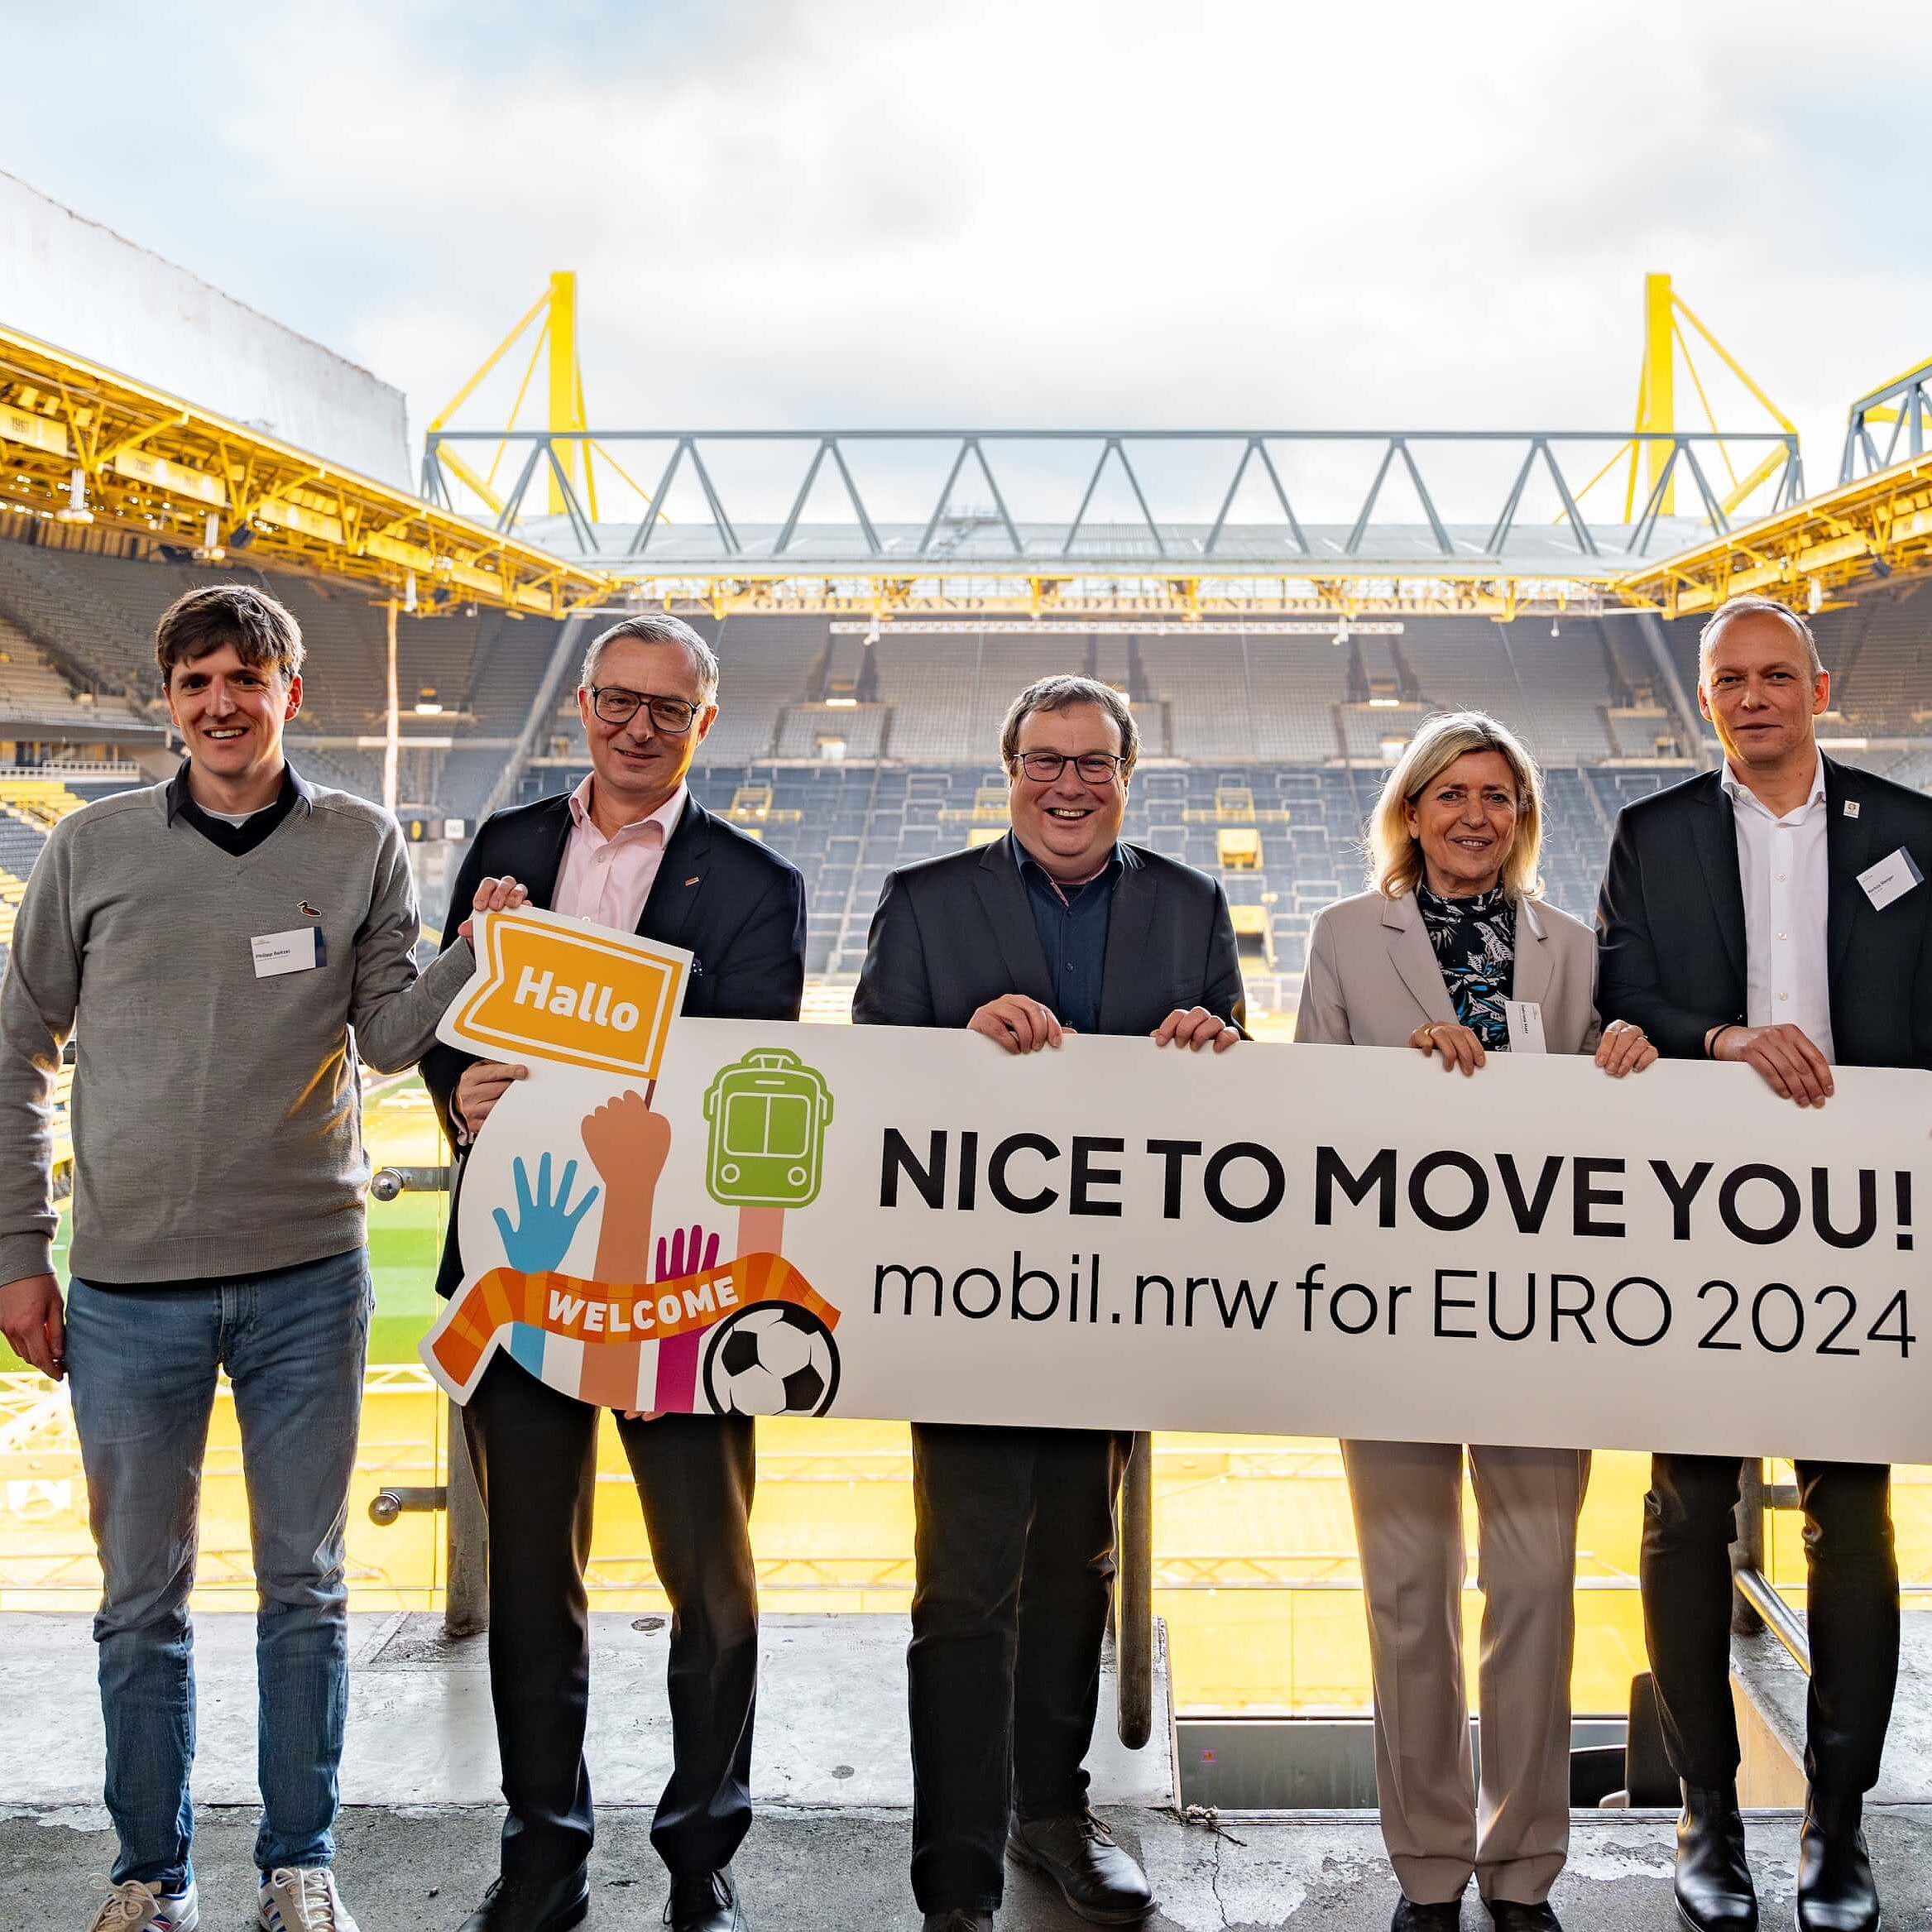 Mehrere Personen stehen auf der Tribüne eines Stadions und halten ein Schild mit der Aufschrift "Nice to move you!" hoch – dem Motto des NRW-Nahverkehrs zur EURO 2024.